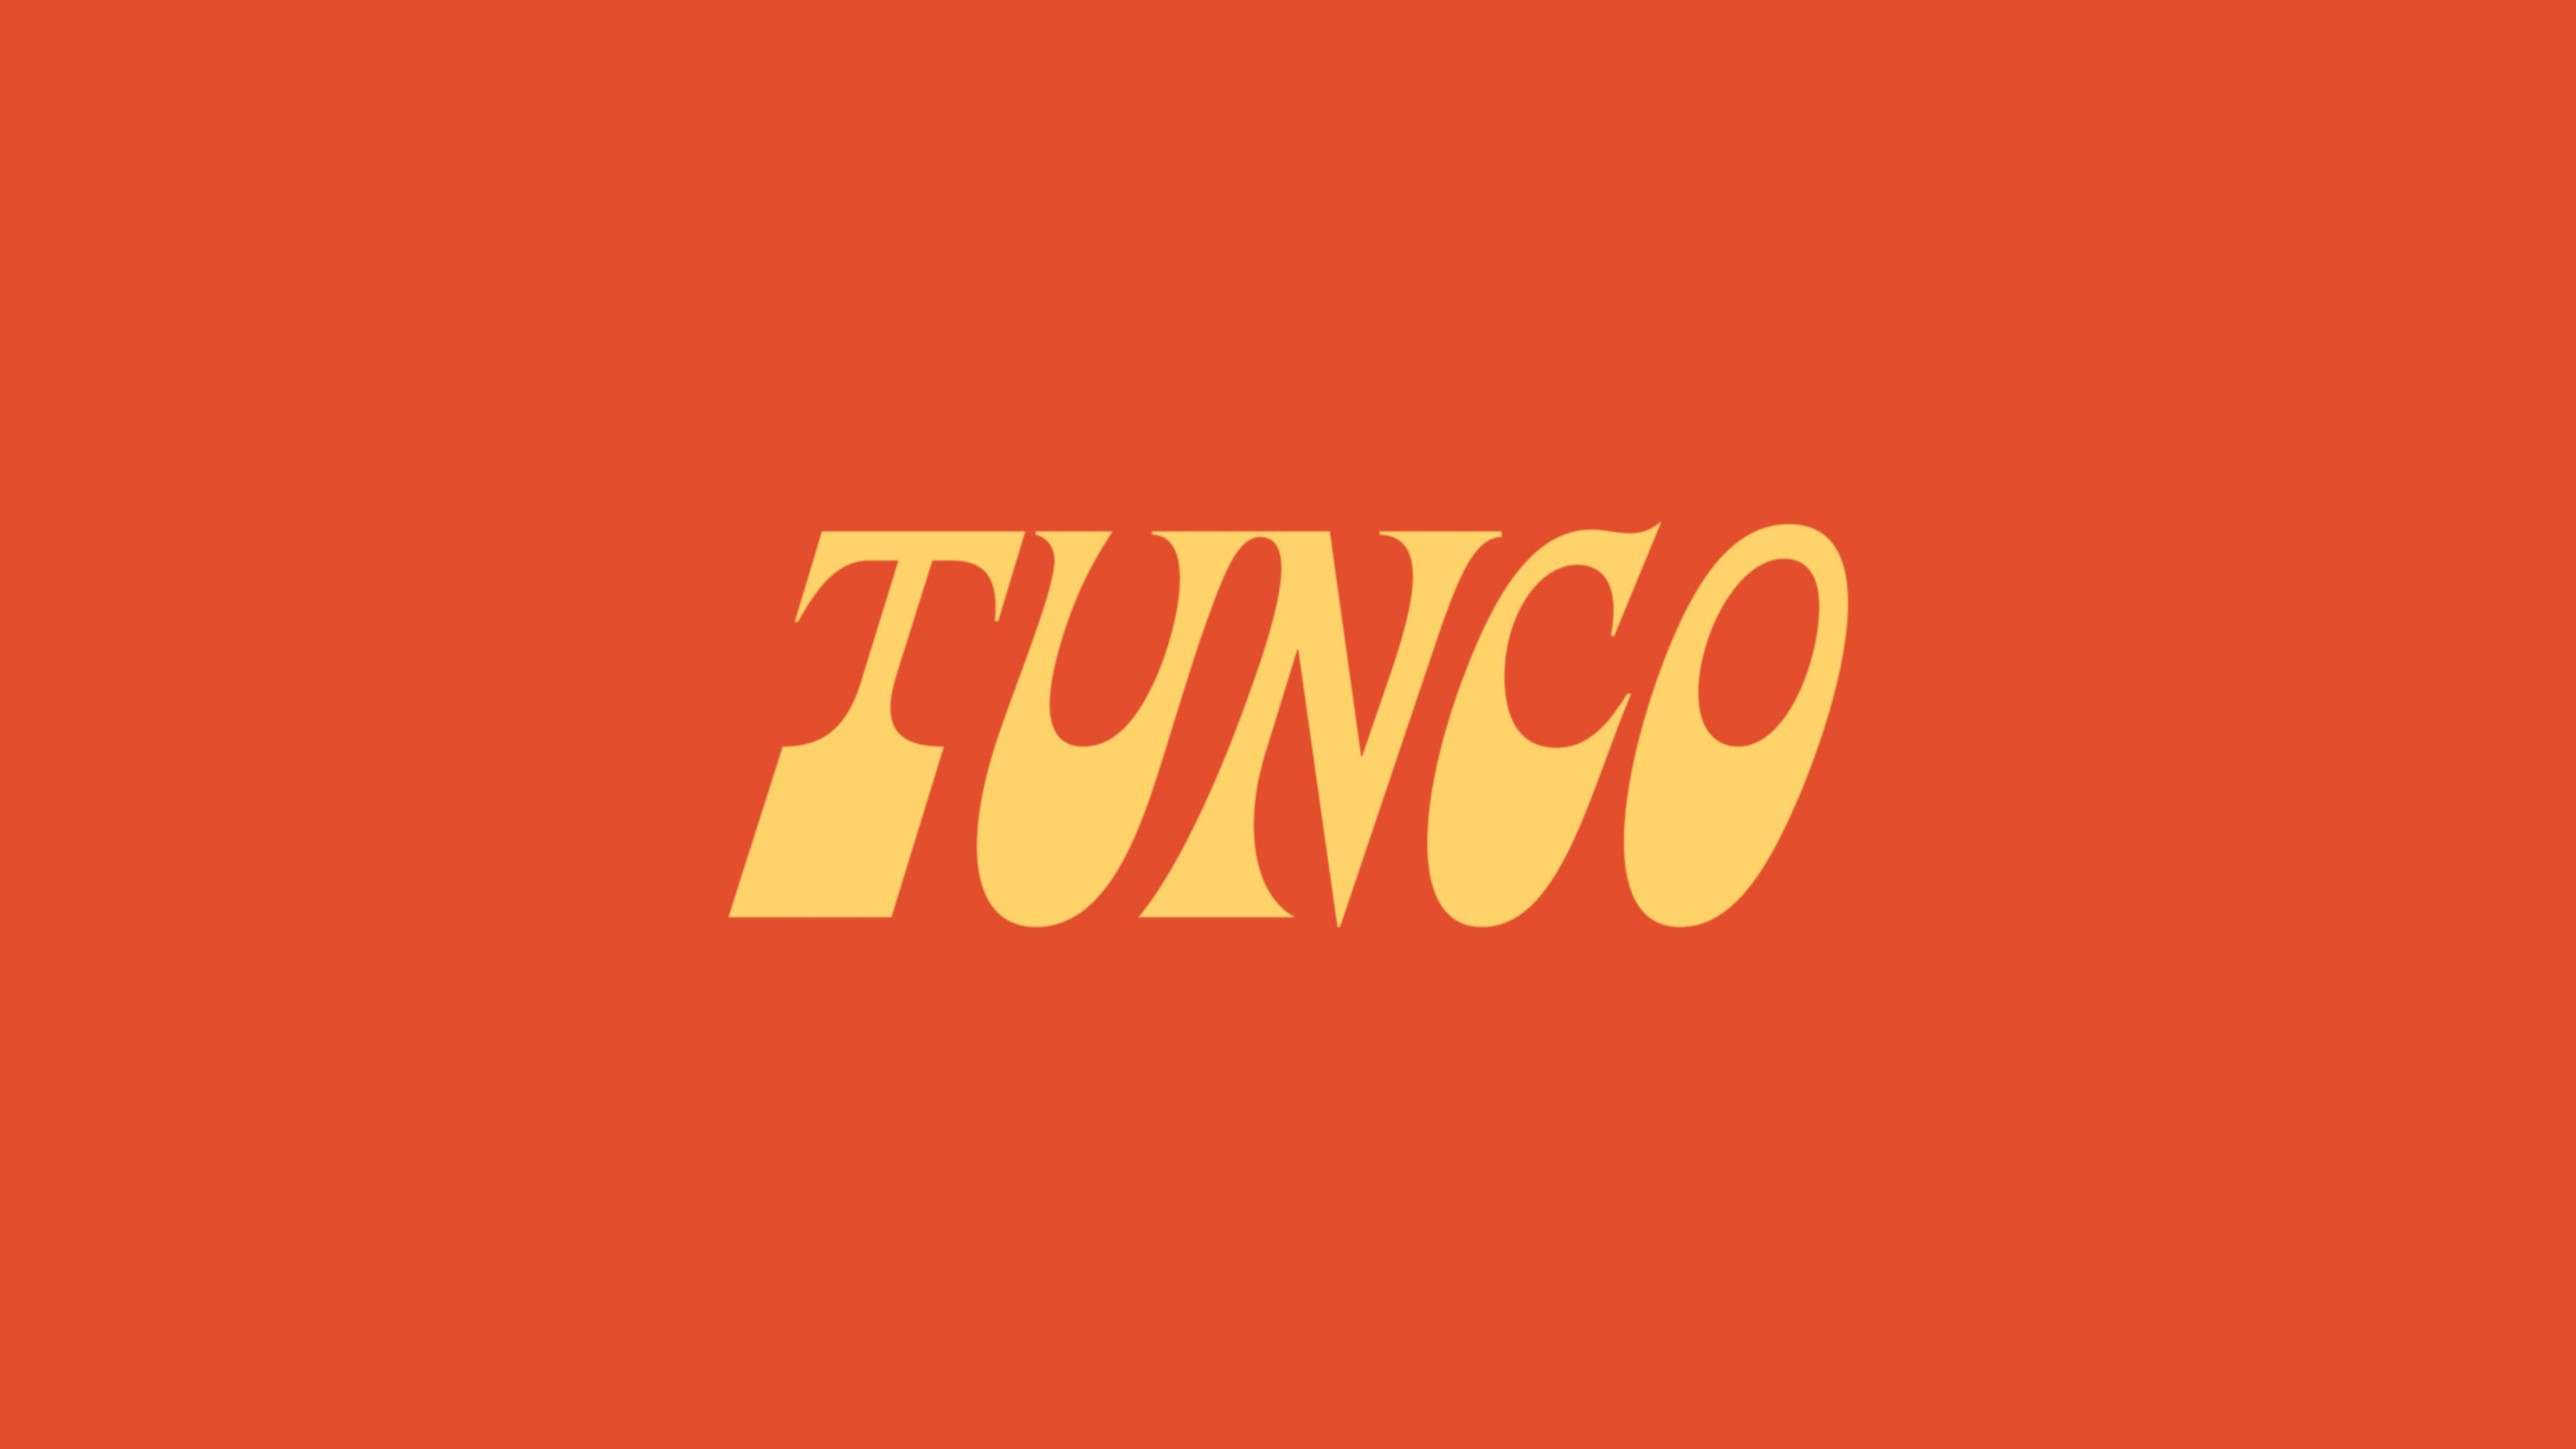 Tunco logo on orange background